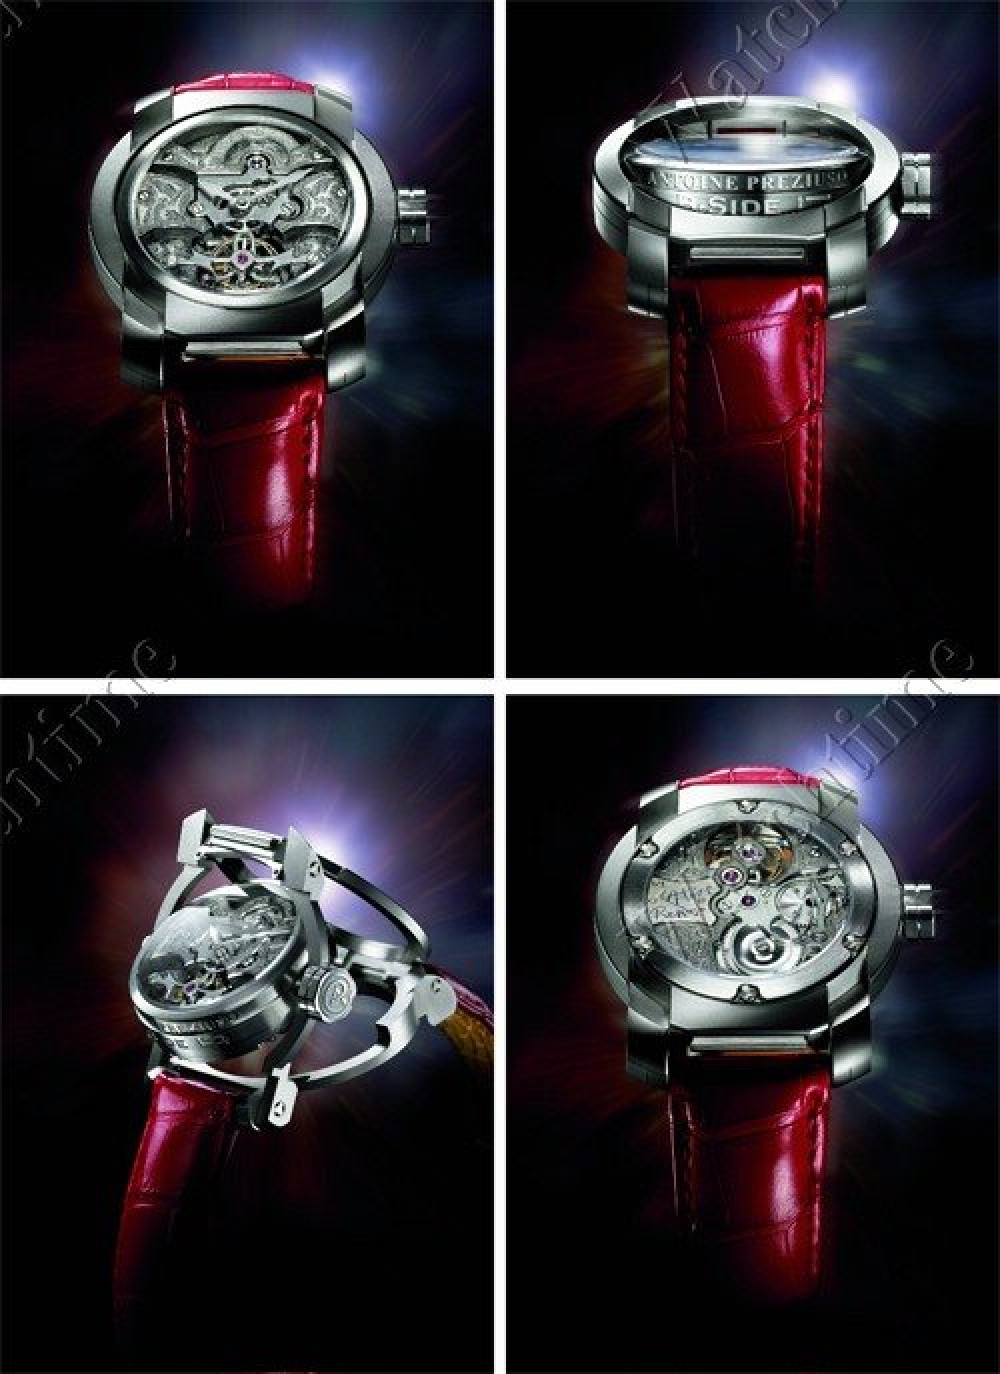 Zegarek firmy Antoine Preziuso, model B-Side